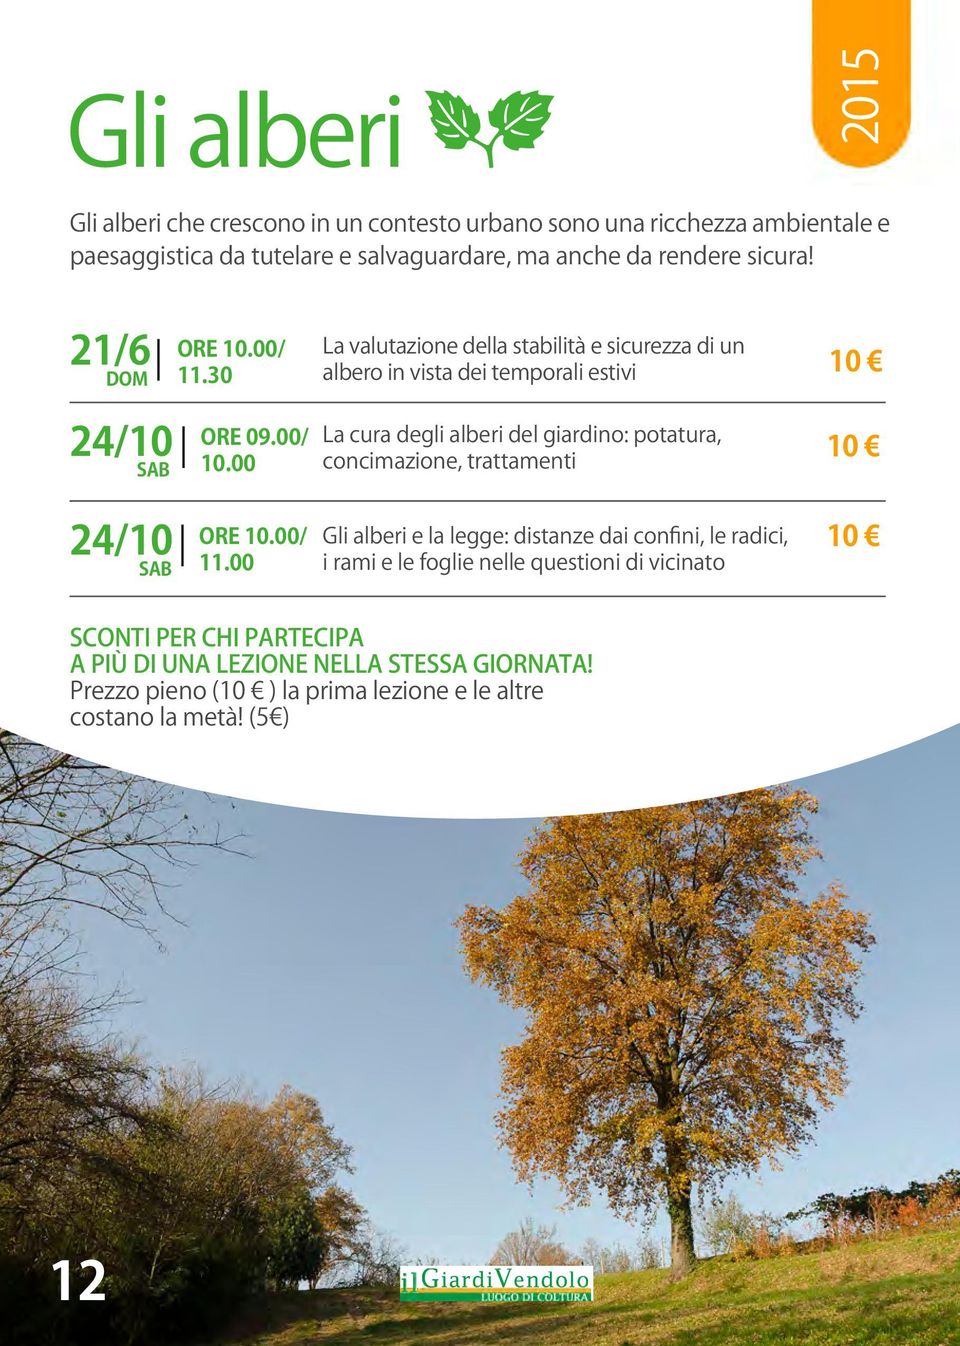 00 La cura degli alberi del giardino: potatura, concimazione, trattamenti 24/10 ORE 10.00/ SAB 11.